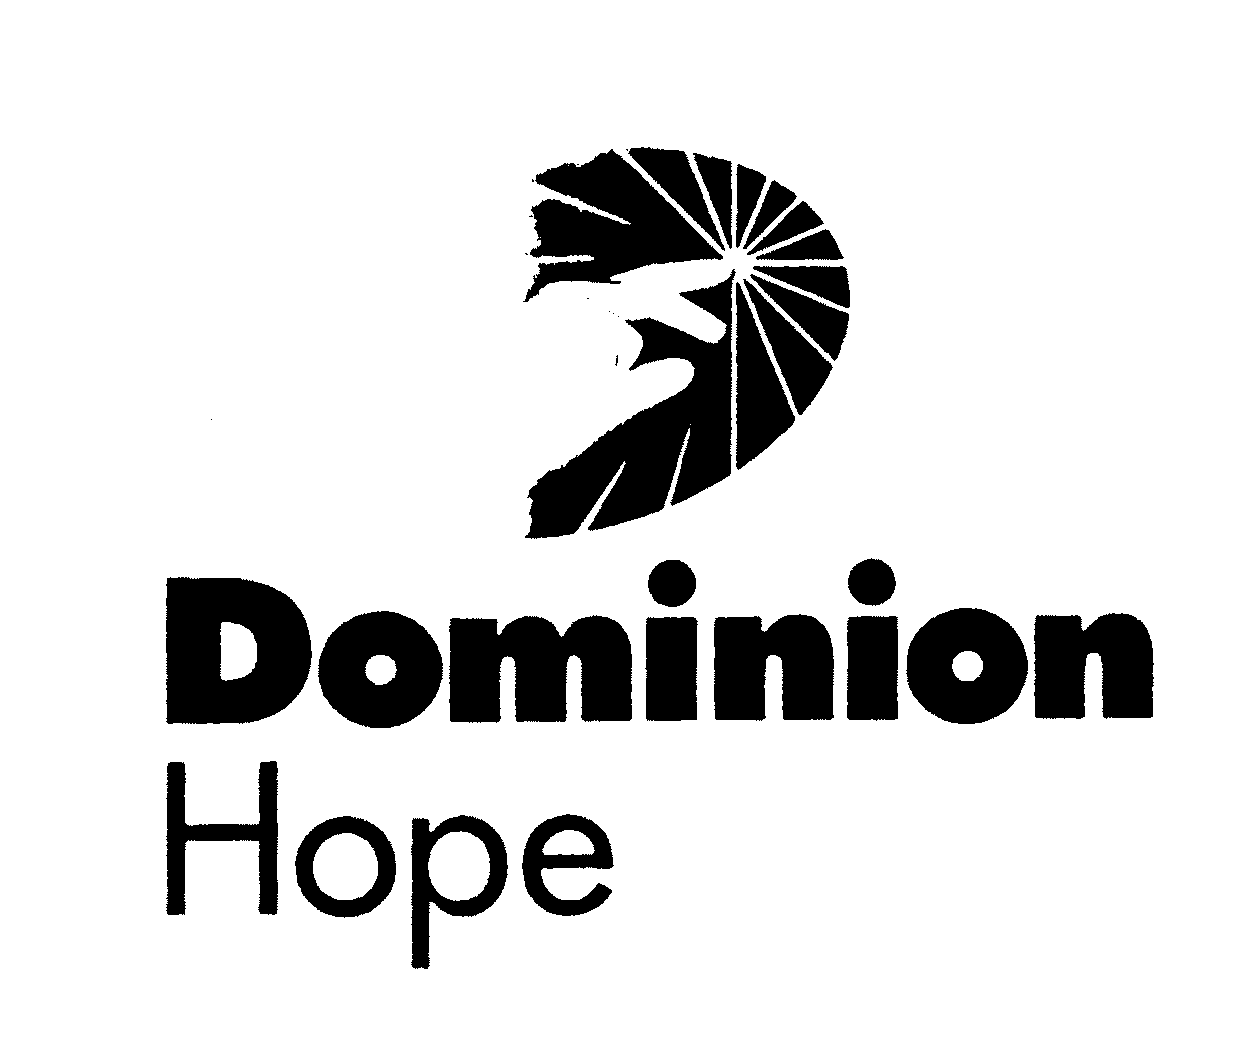  DOMINION HOPE